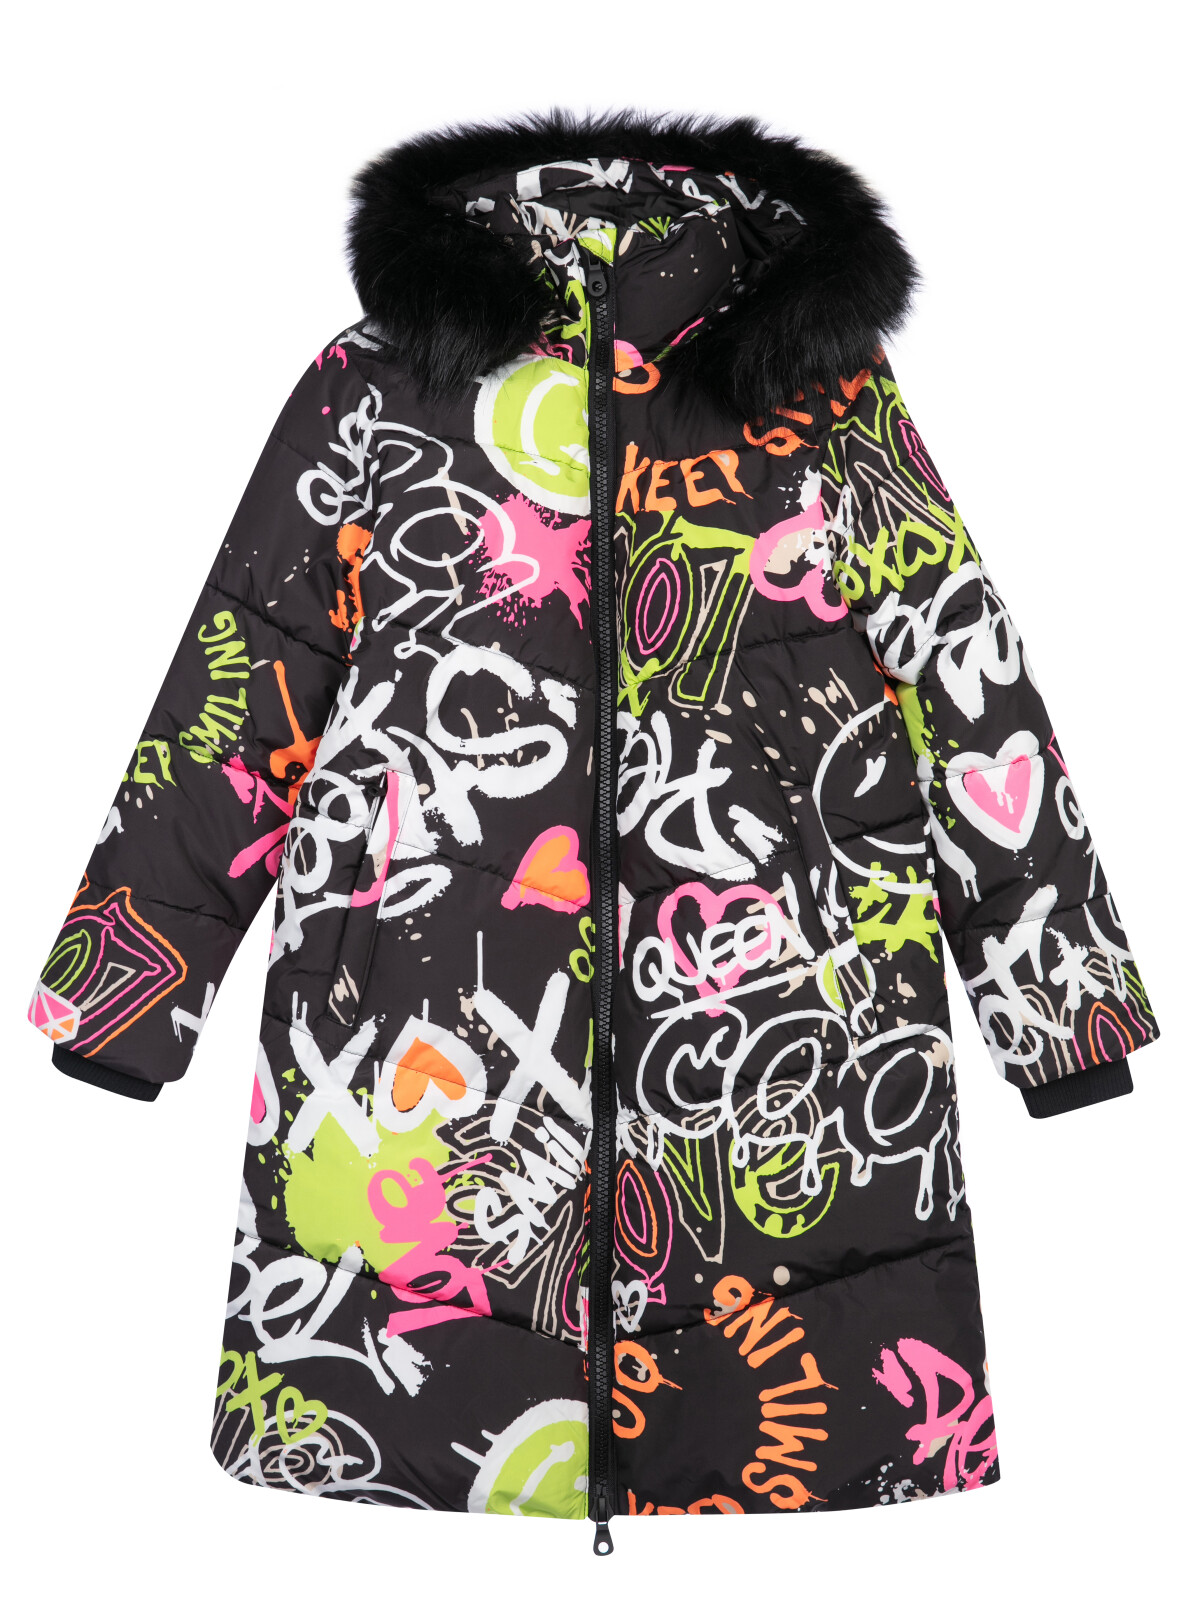 Пальто текстильное с полиуретановым покрытием для девочек PlayToday, цветной, 134